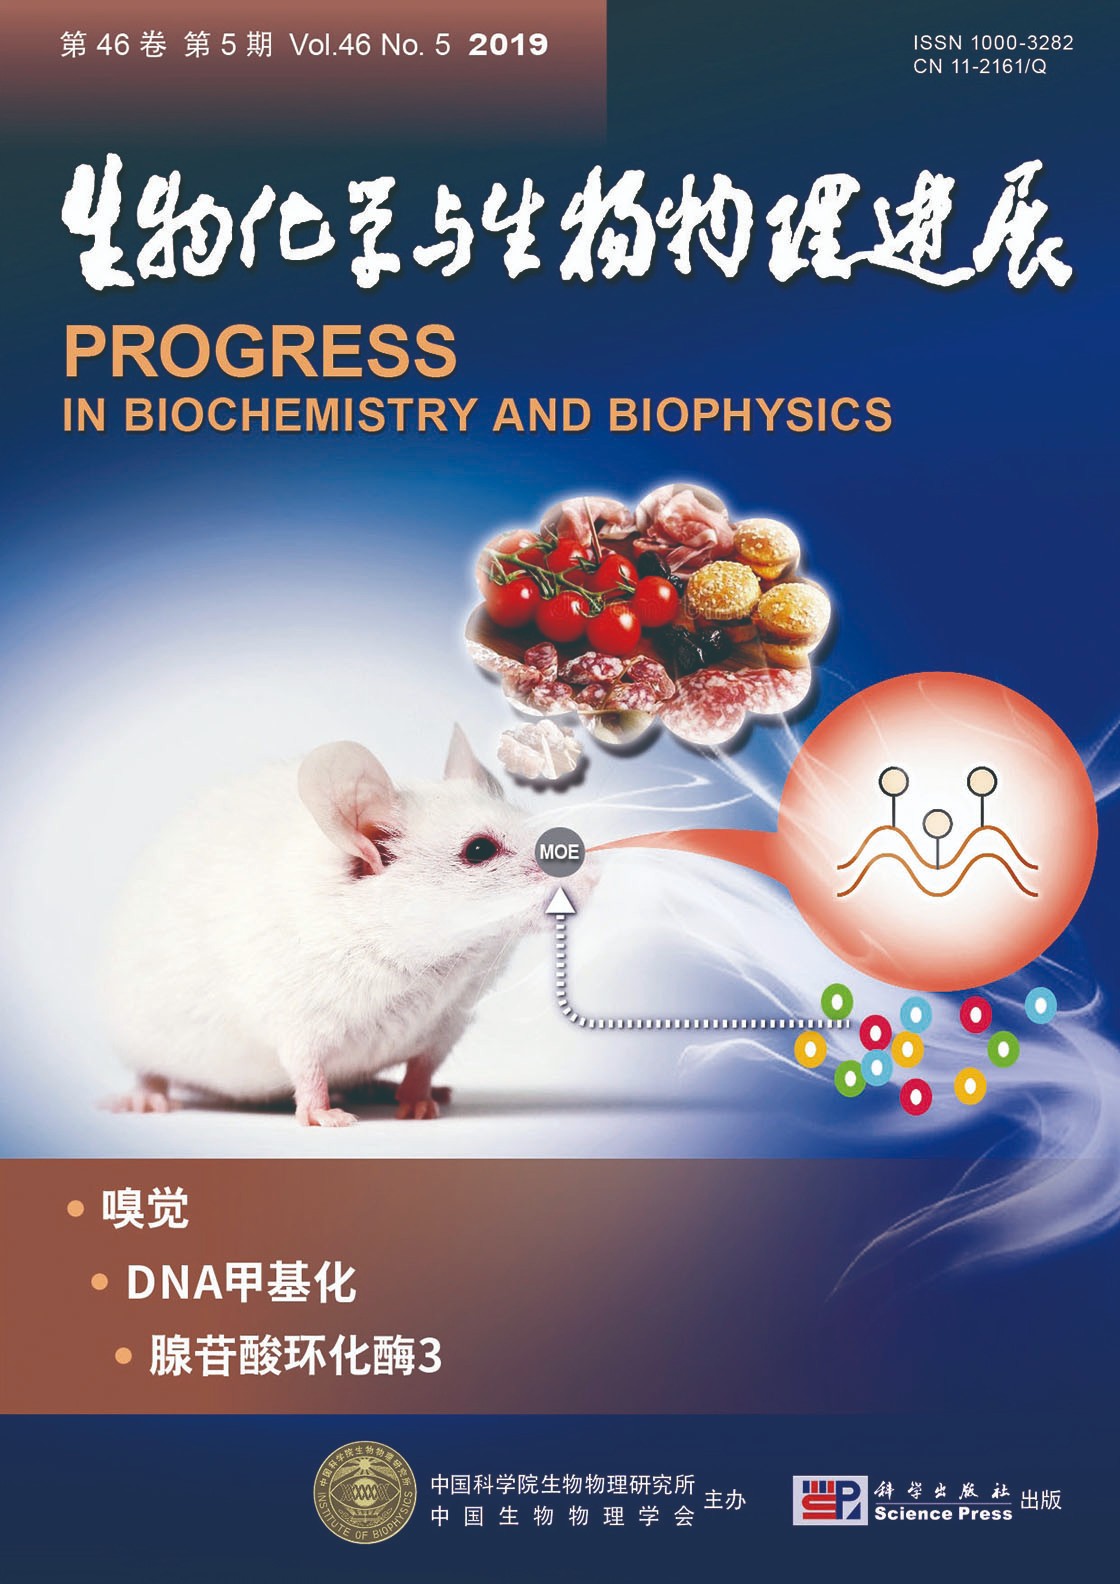 恭贺实验室周艳芬老师论文发表在 生物化学与生物物理研究进展 并作为19年第五期封面文章 课题组新闻 动物分子遗传学课题组